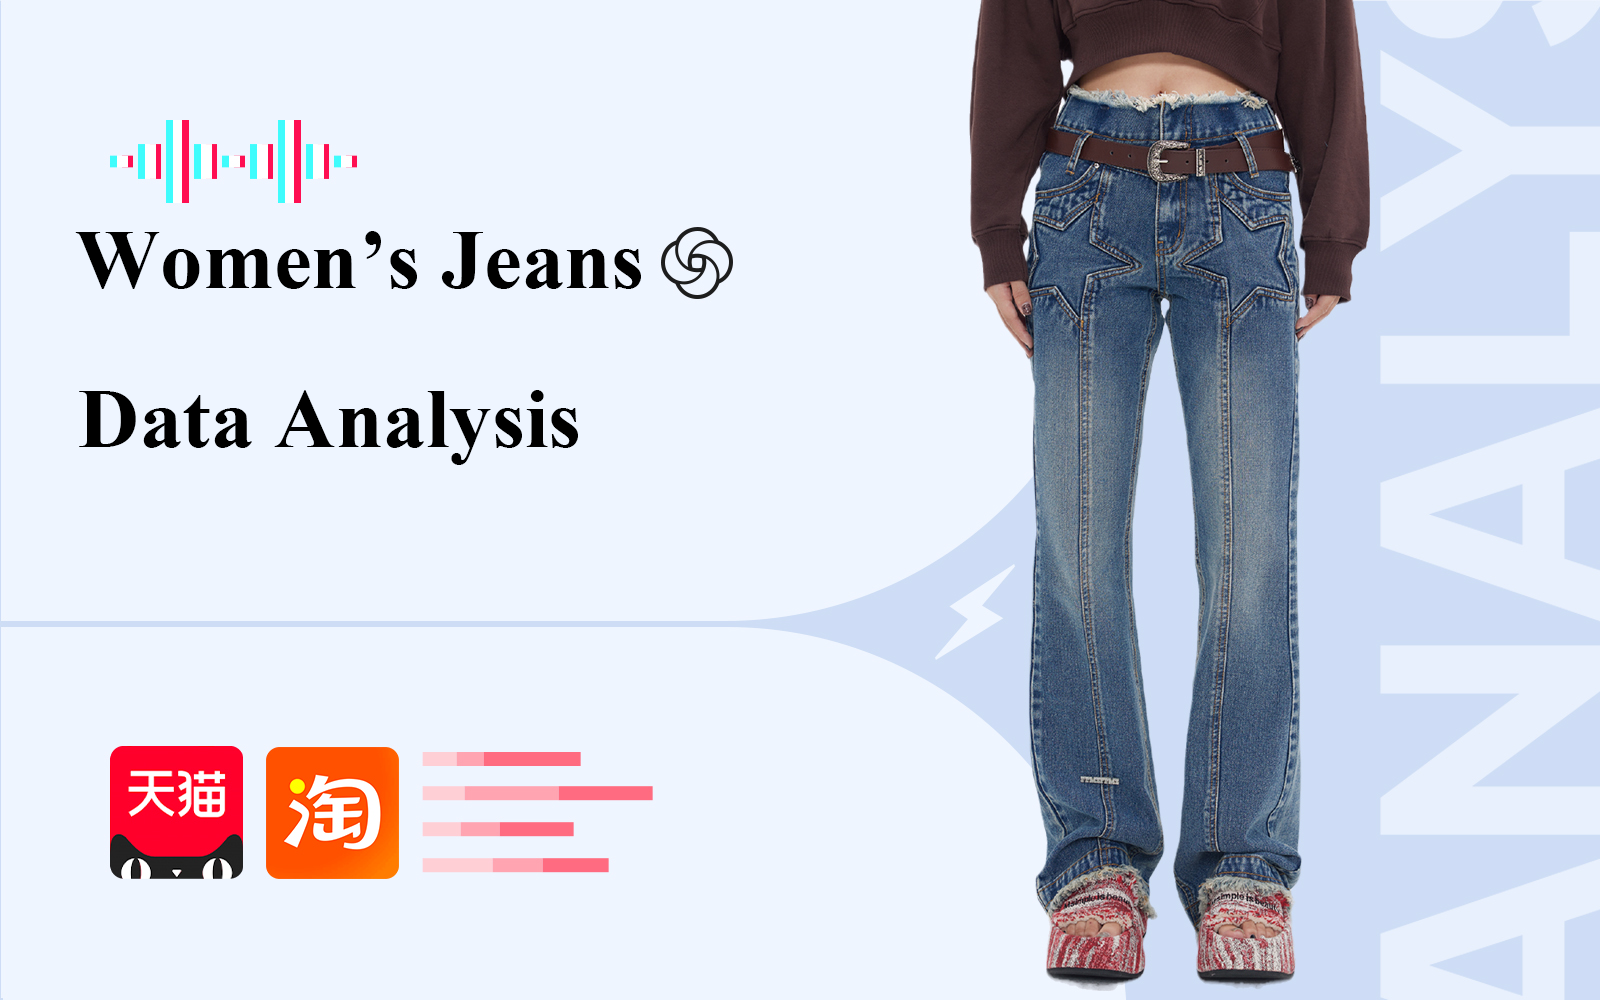 Jeans -- The Data Analysis of Women's Denim E-Commerce in November